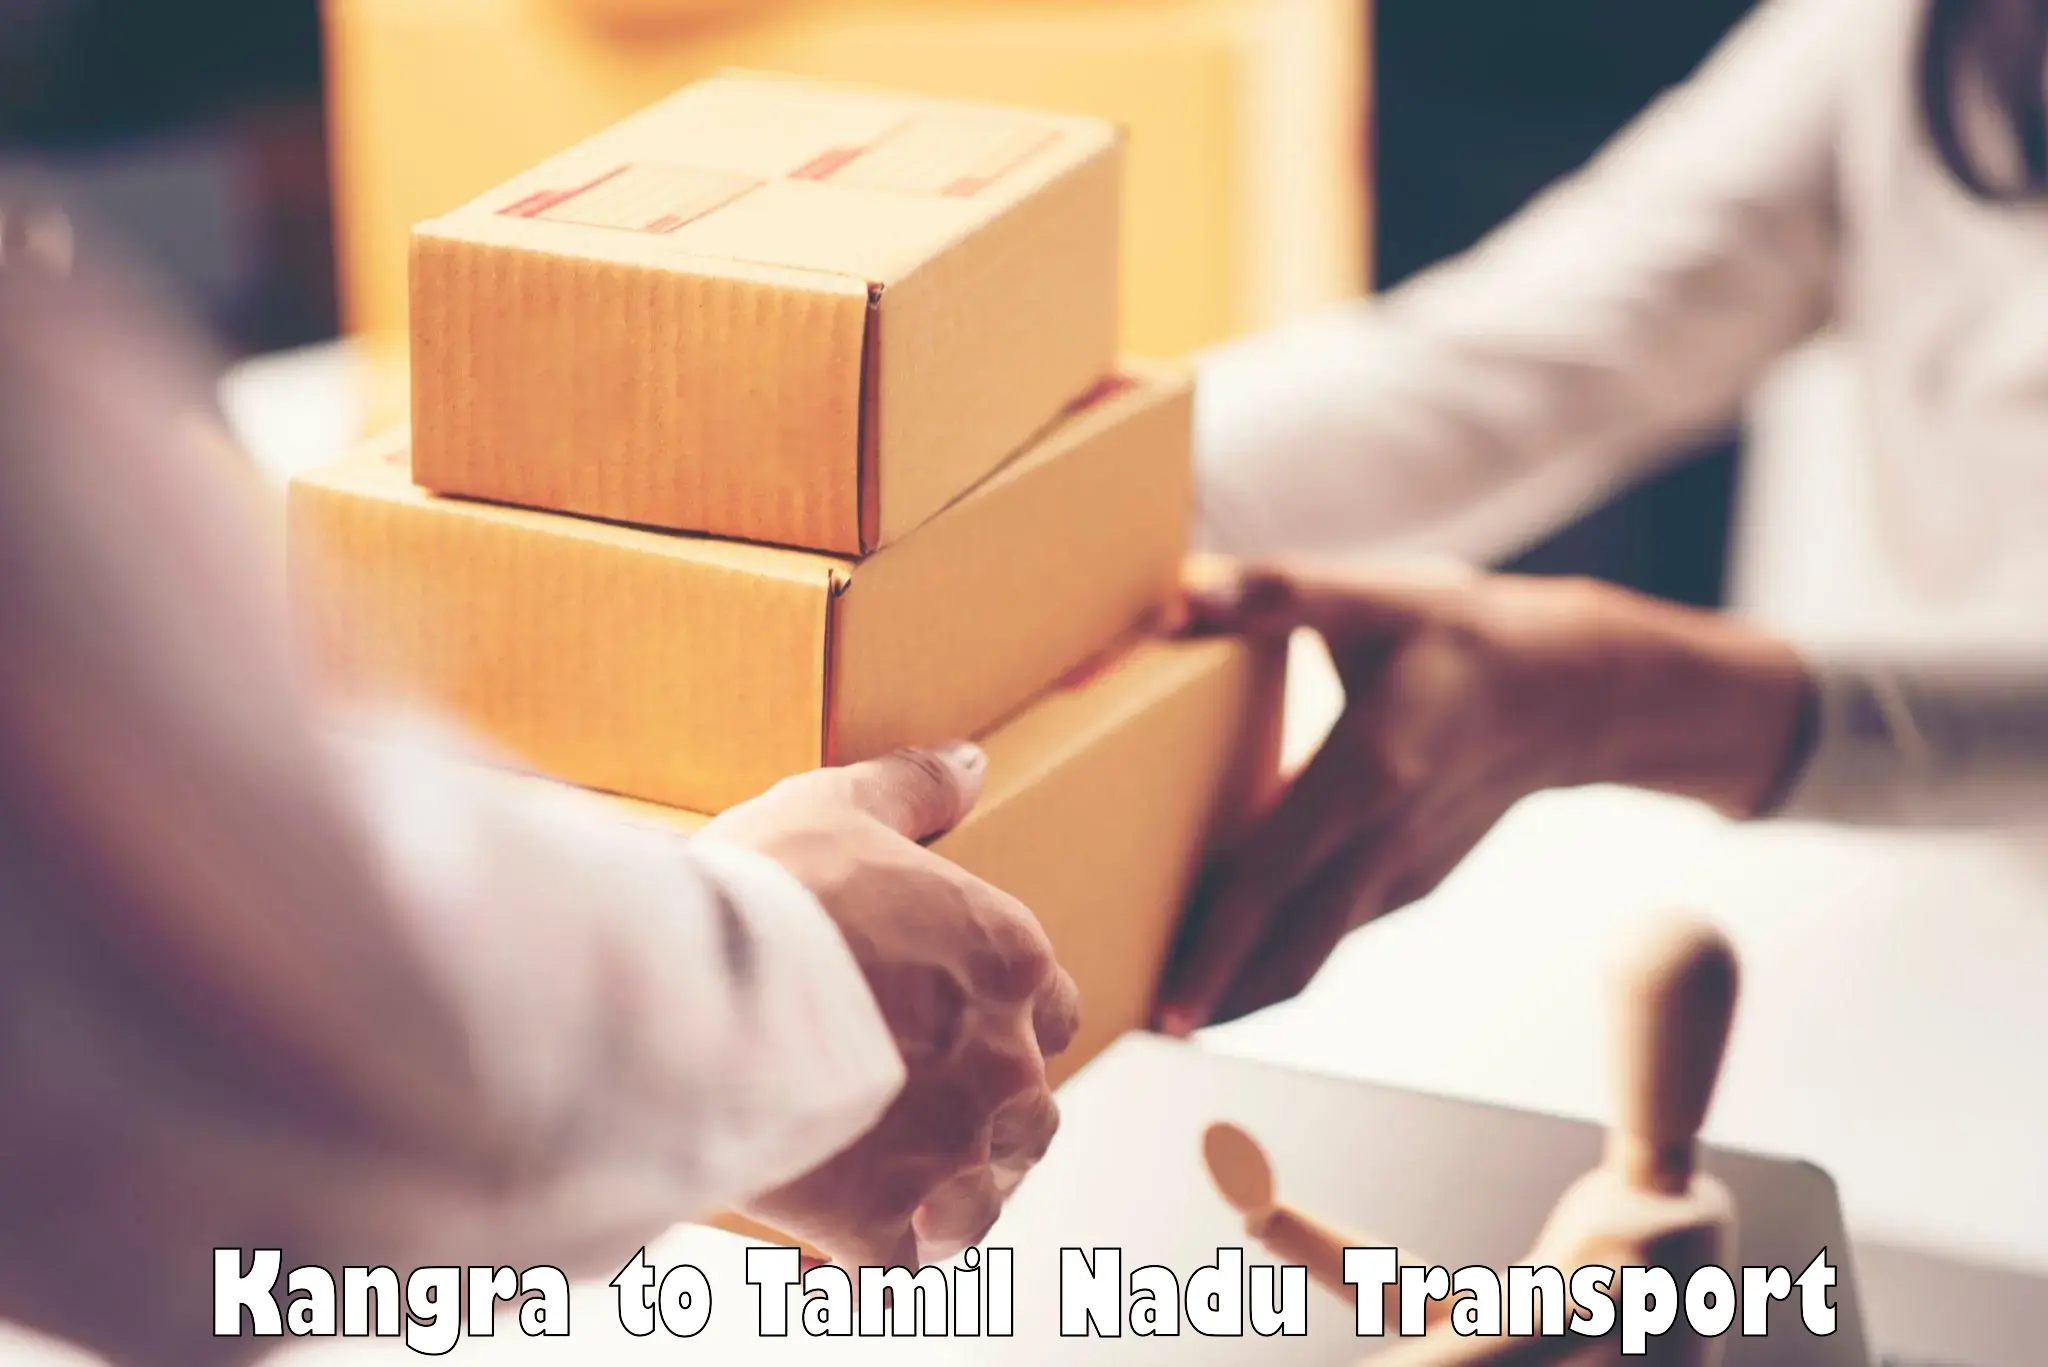 Goods delivery service Kangra to Tiruturaipundi